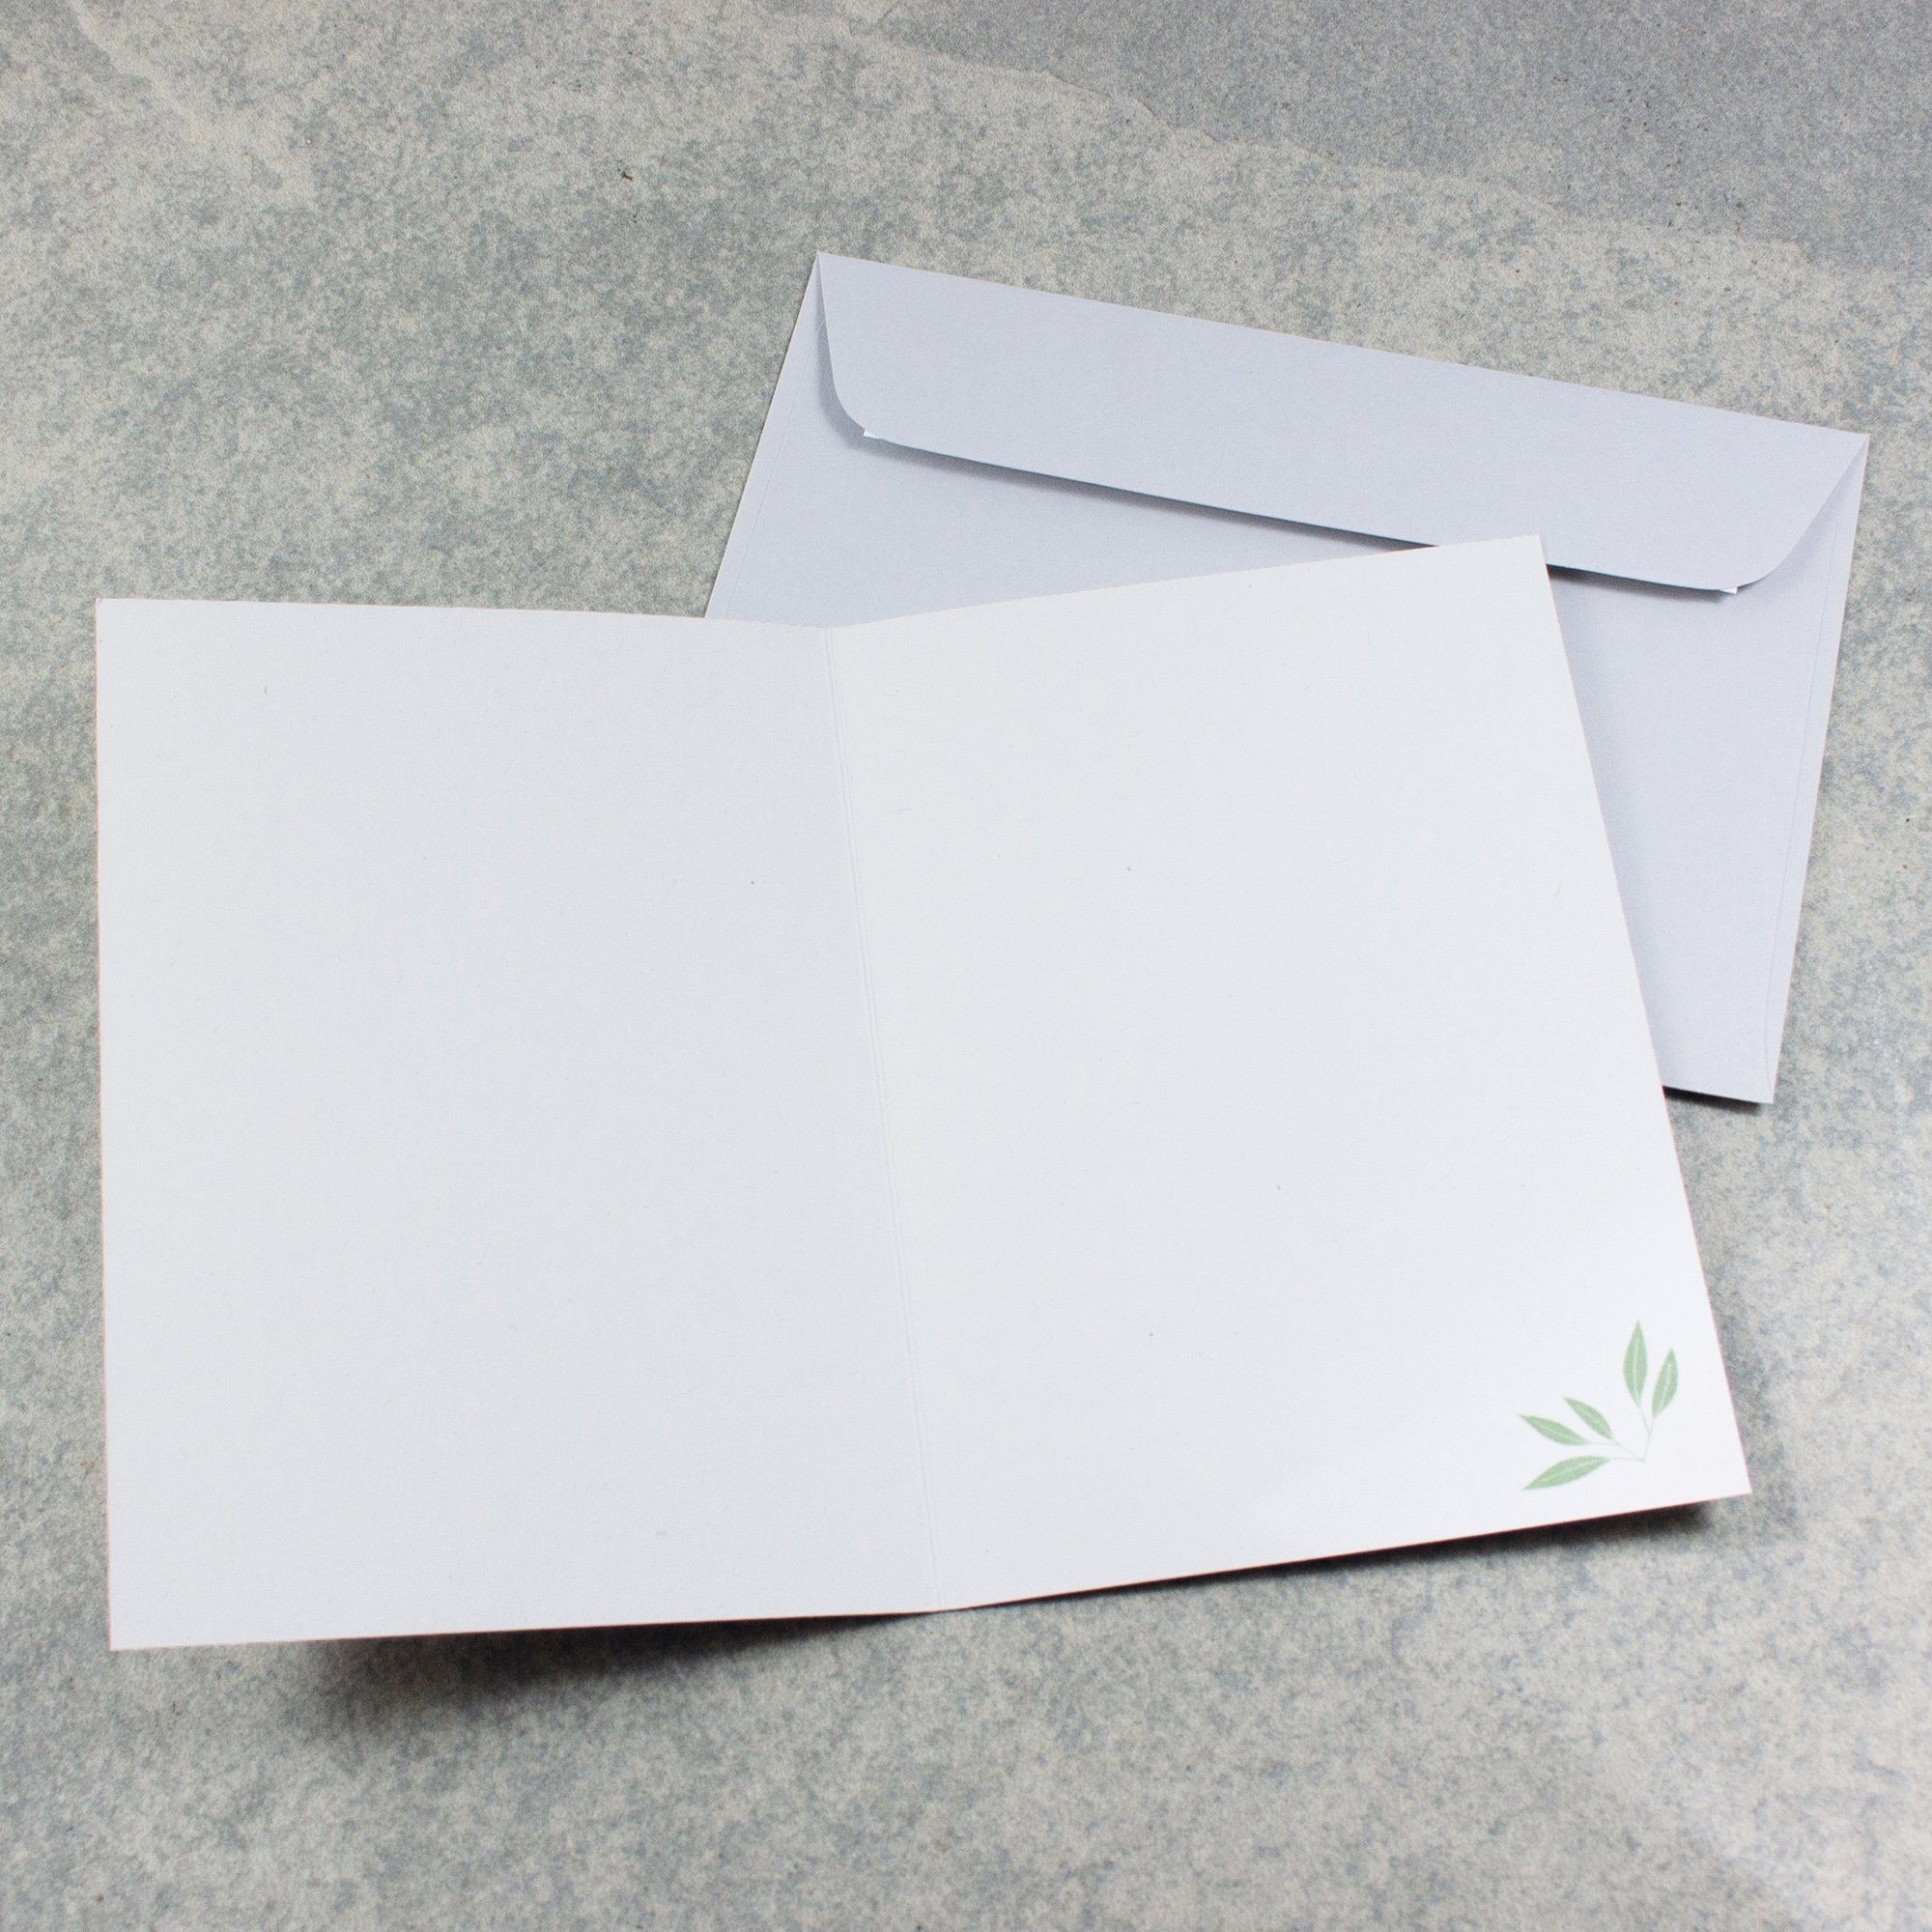 Bow & Hummingbird Grußkarten Trauerkarte „Das nicht." grauer endet, Umschlag die Liebe Leben